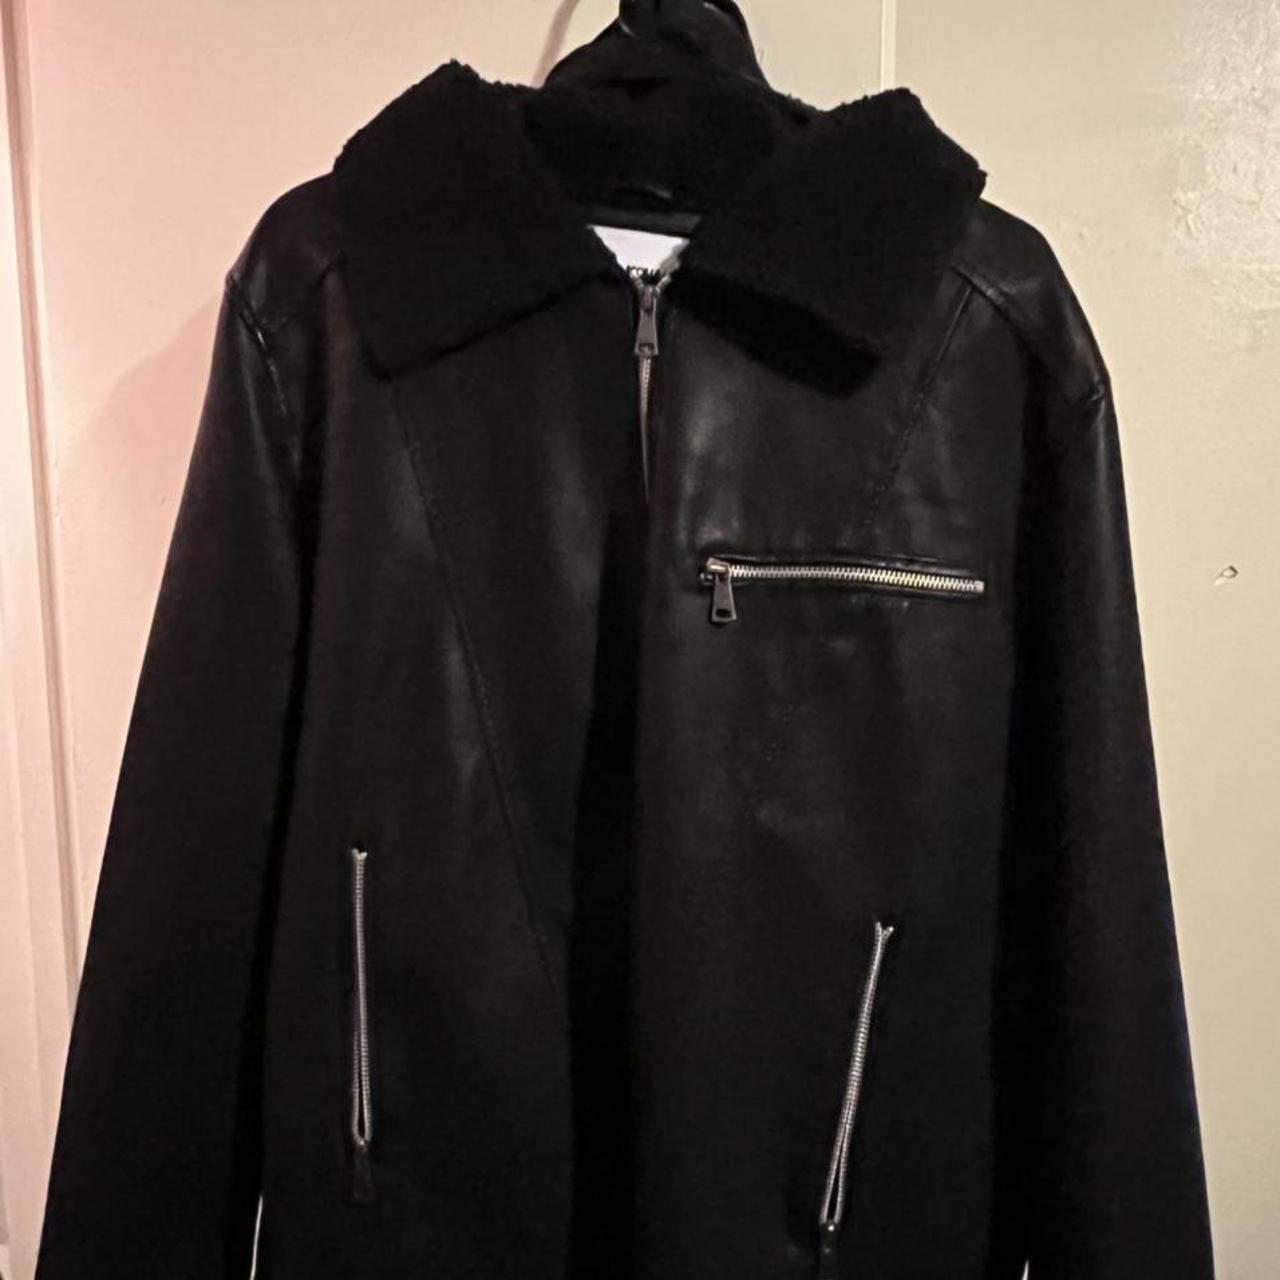 Fashion Nova Leather Jacket Size large Never worn... - Depop